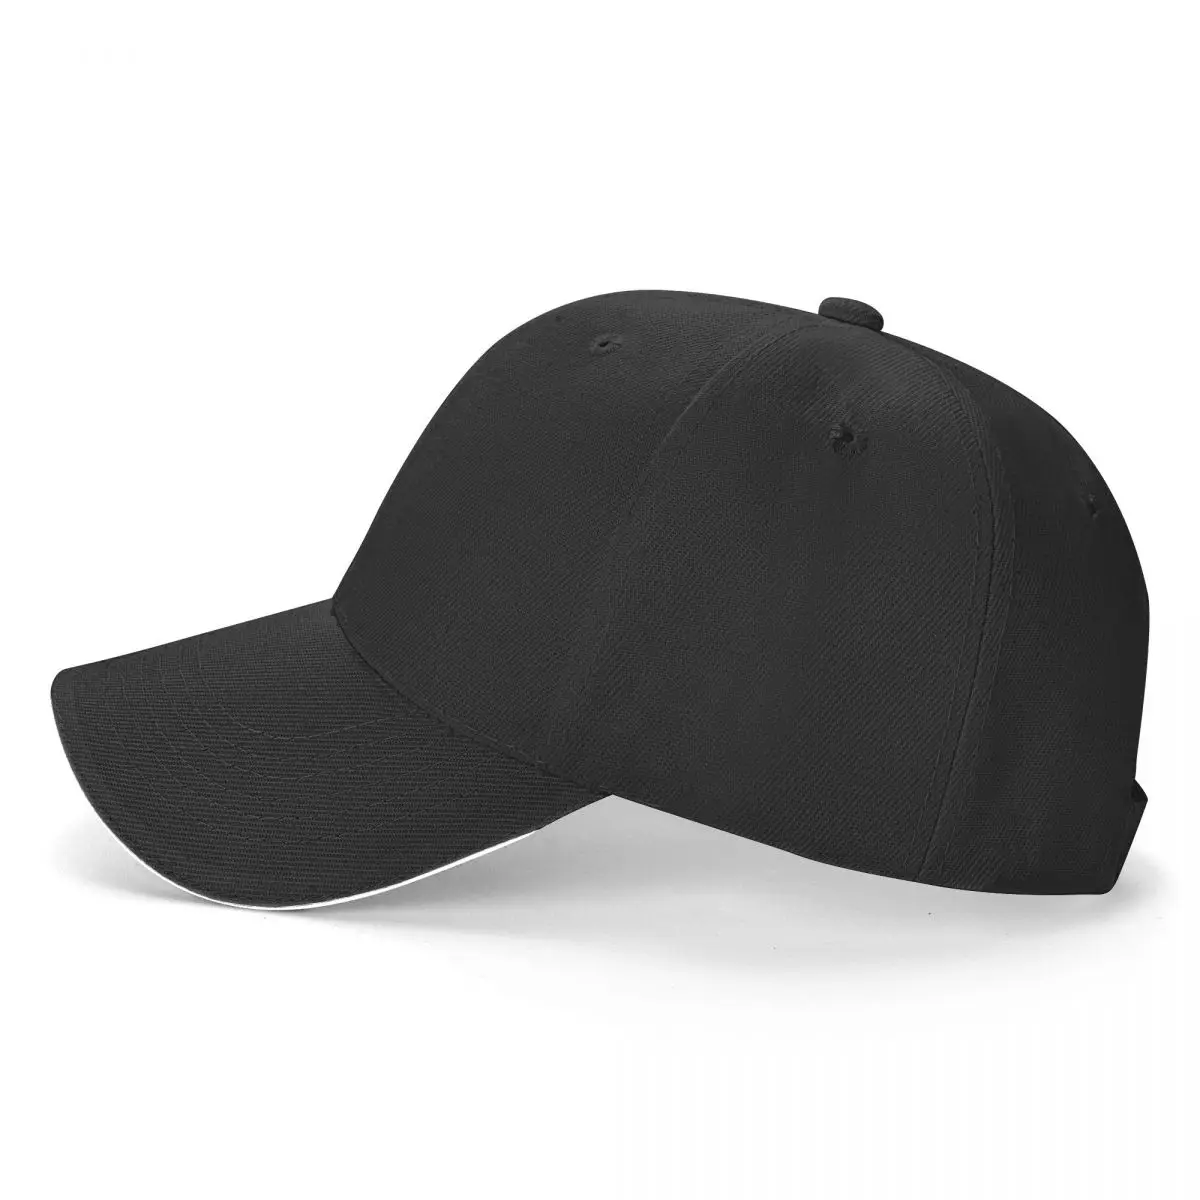 חדש חם מדי כדי להתמודד עם כובע בייסבול פלאפי כובע Sunhat הכובע הגברי של נשים